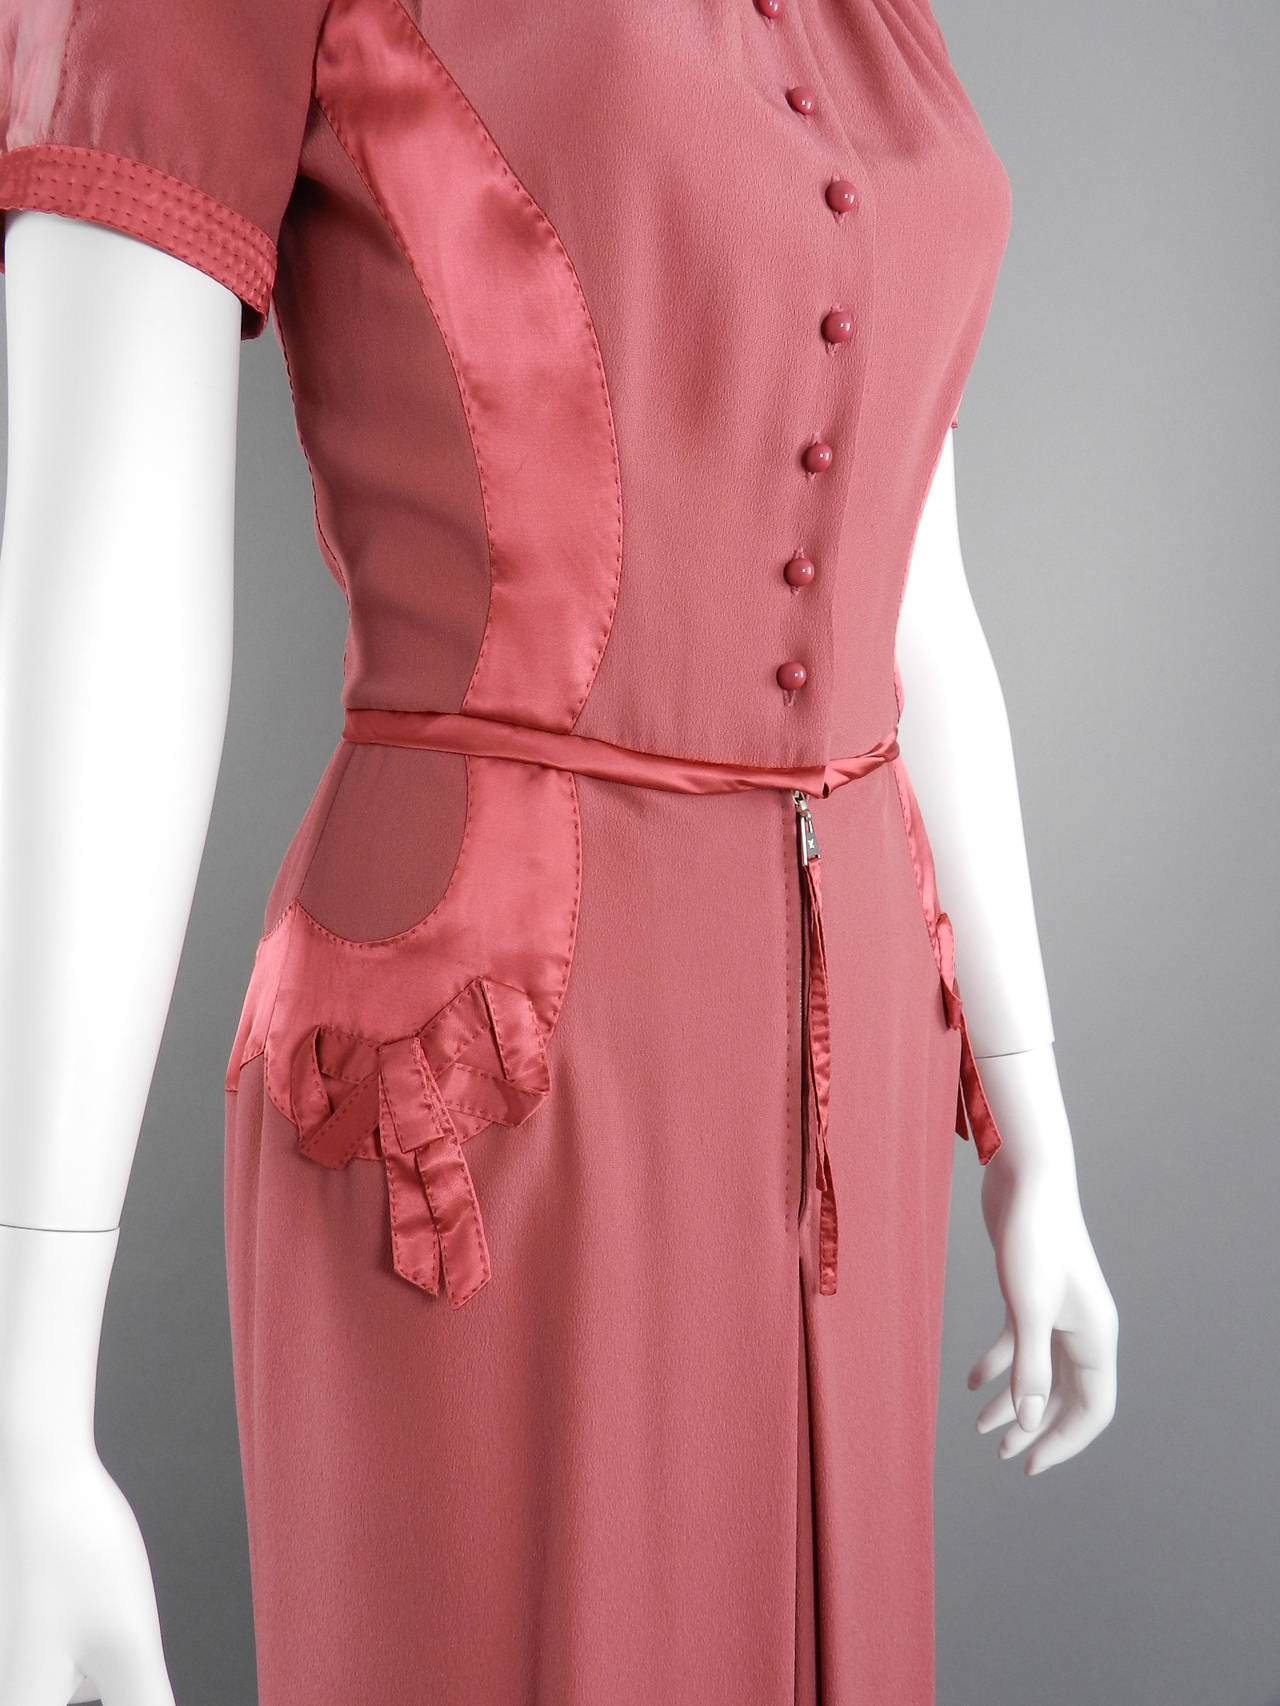 Louis Vuitton Rose Color 1930's Vintage Style Dress 1